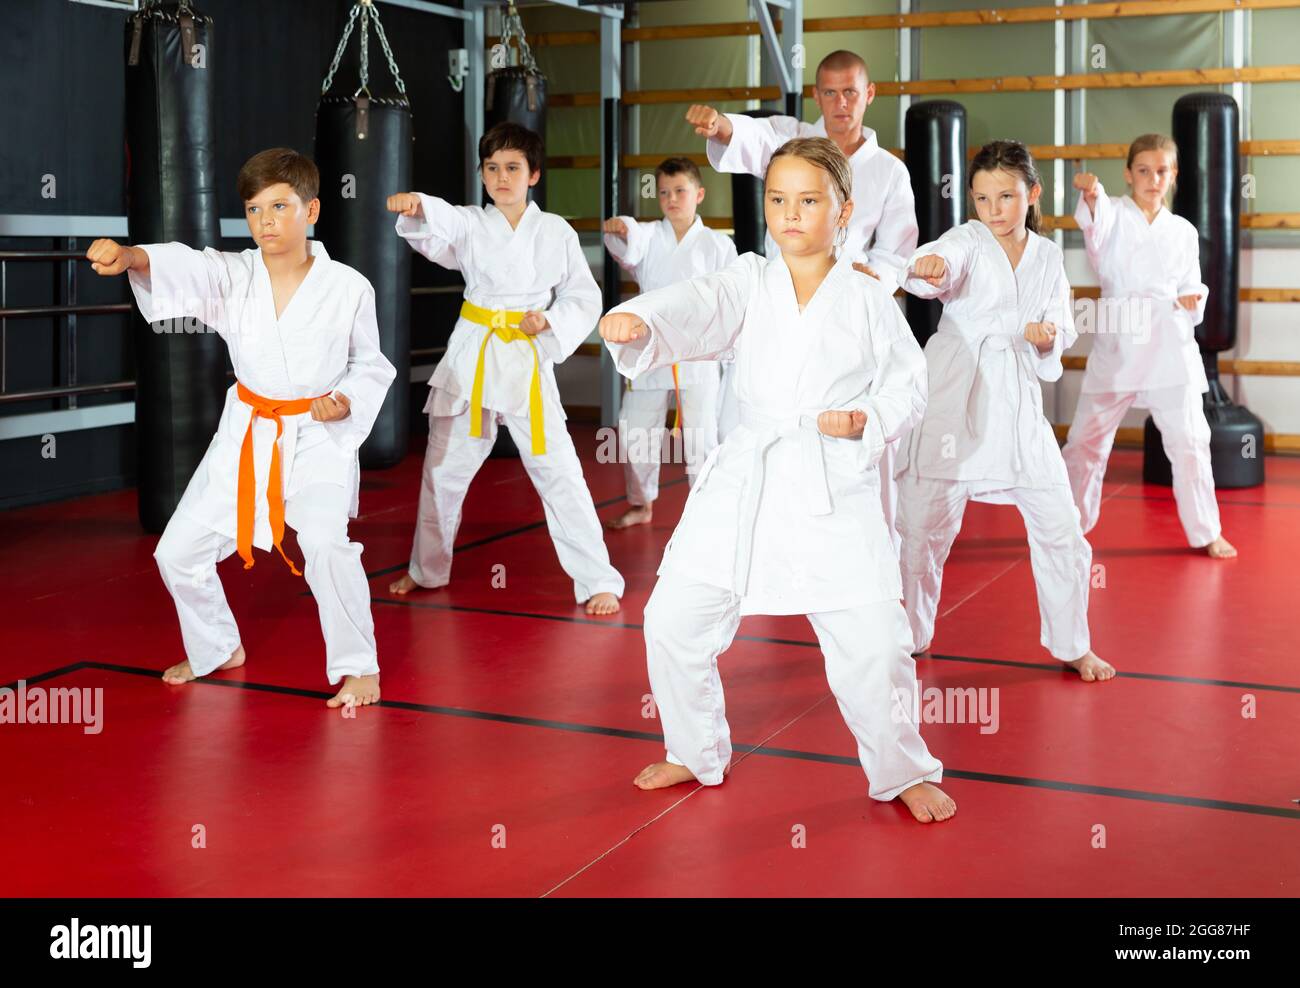 Karate kids in kimono performing kata moves Stock Photo - Alamy